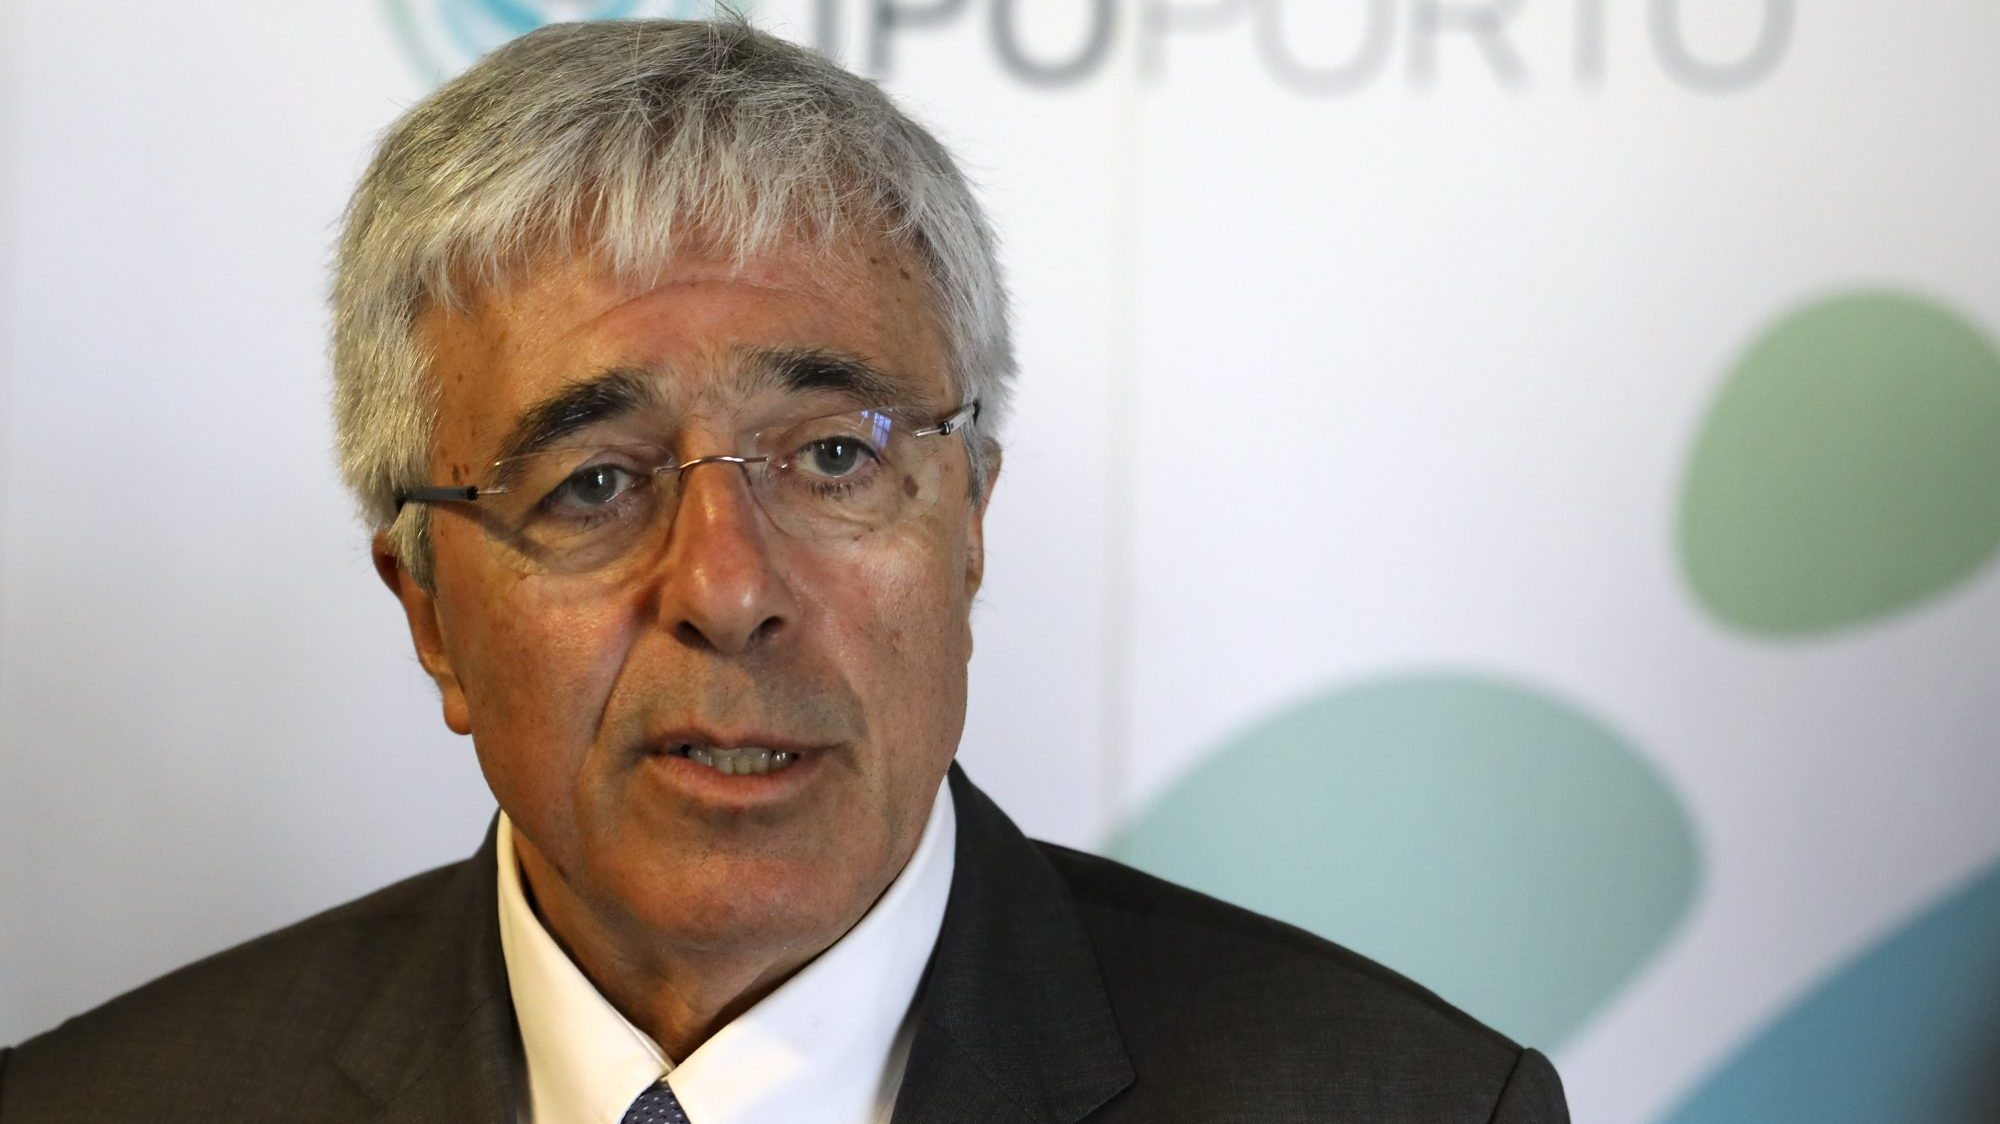 Francisco Ramos é o coordenador da task-force nomeada para o plano de vacinação contra a Covid-19 em Portugal